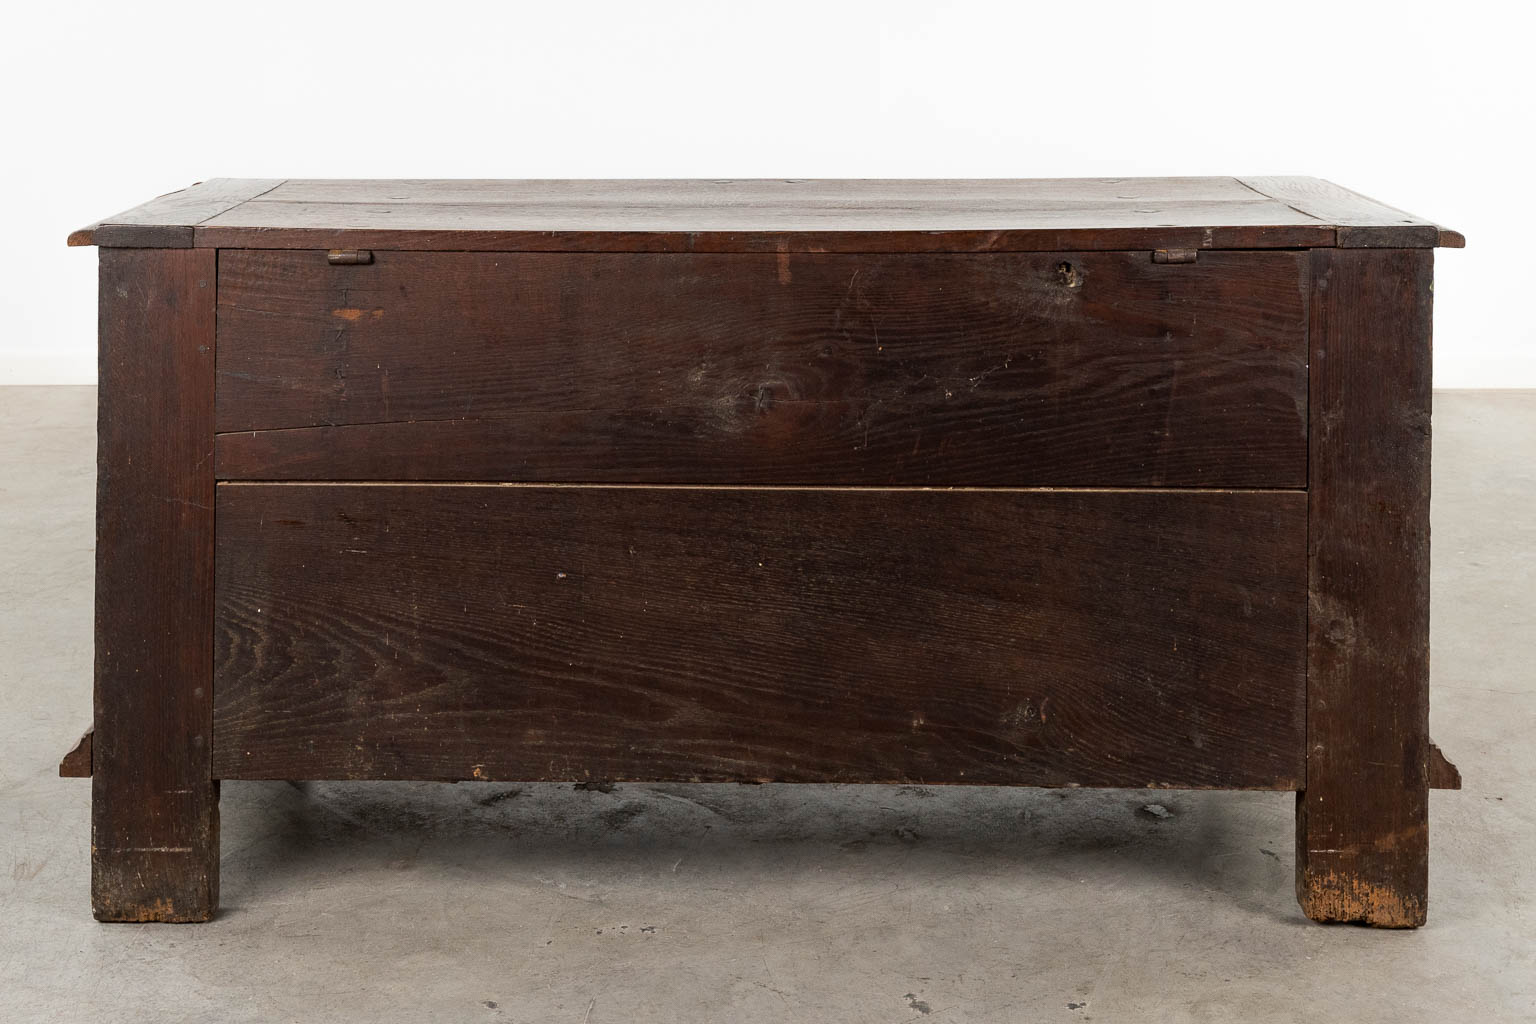 An antique chest, 19th C. (D:60 x W:140 x H:70 cm)